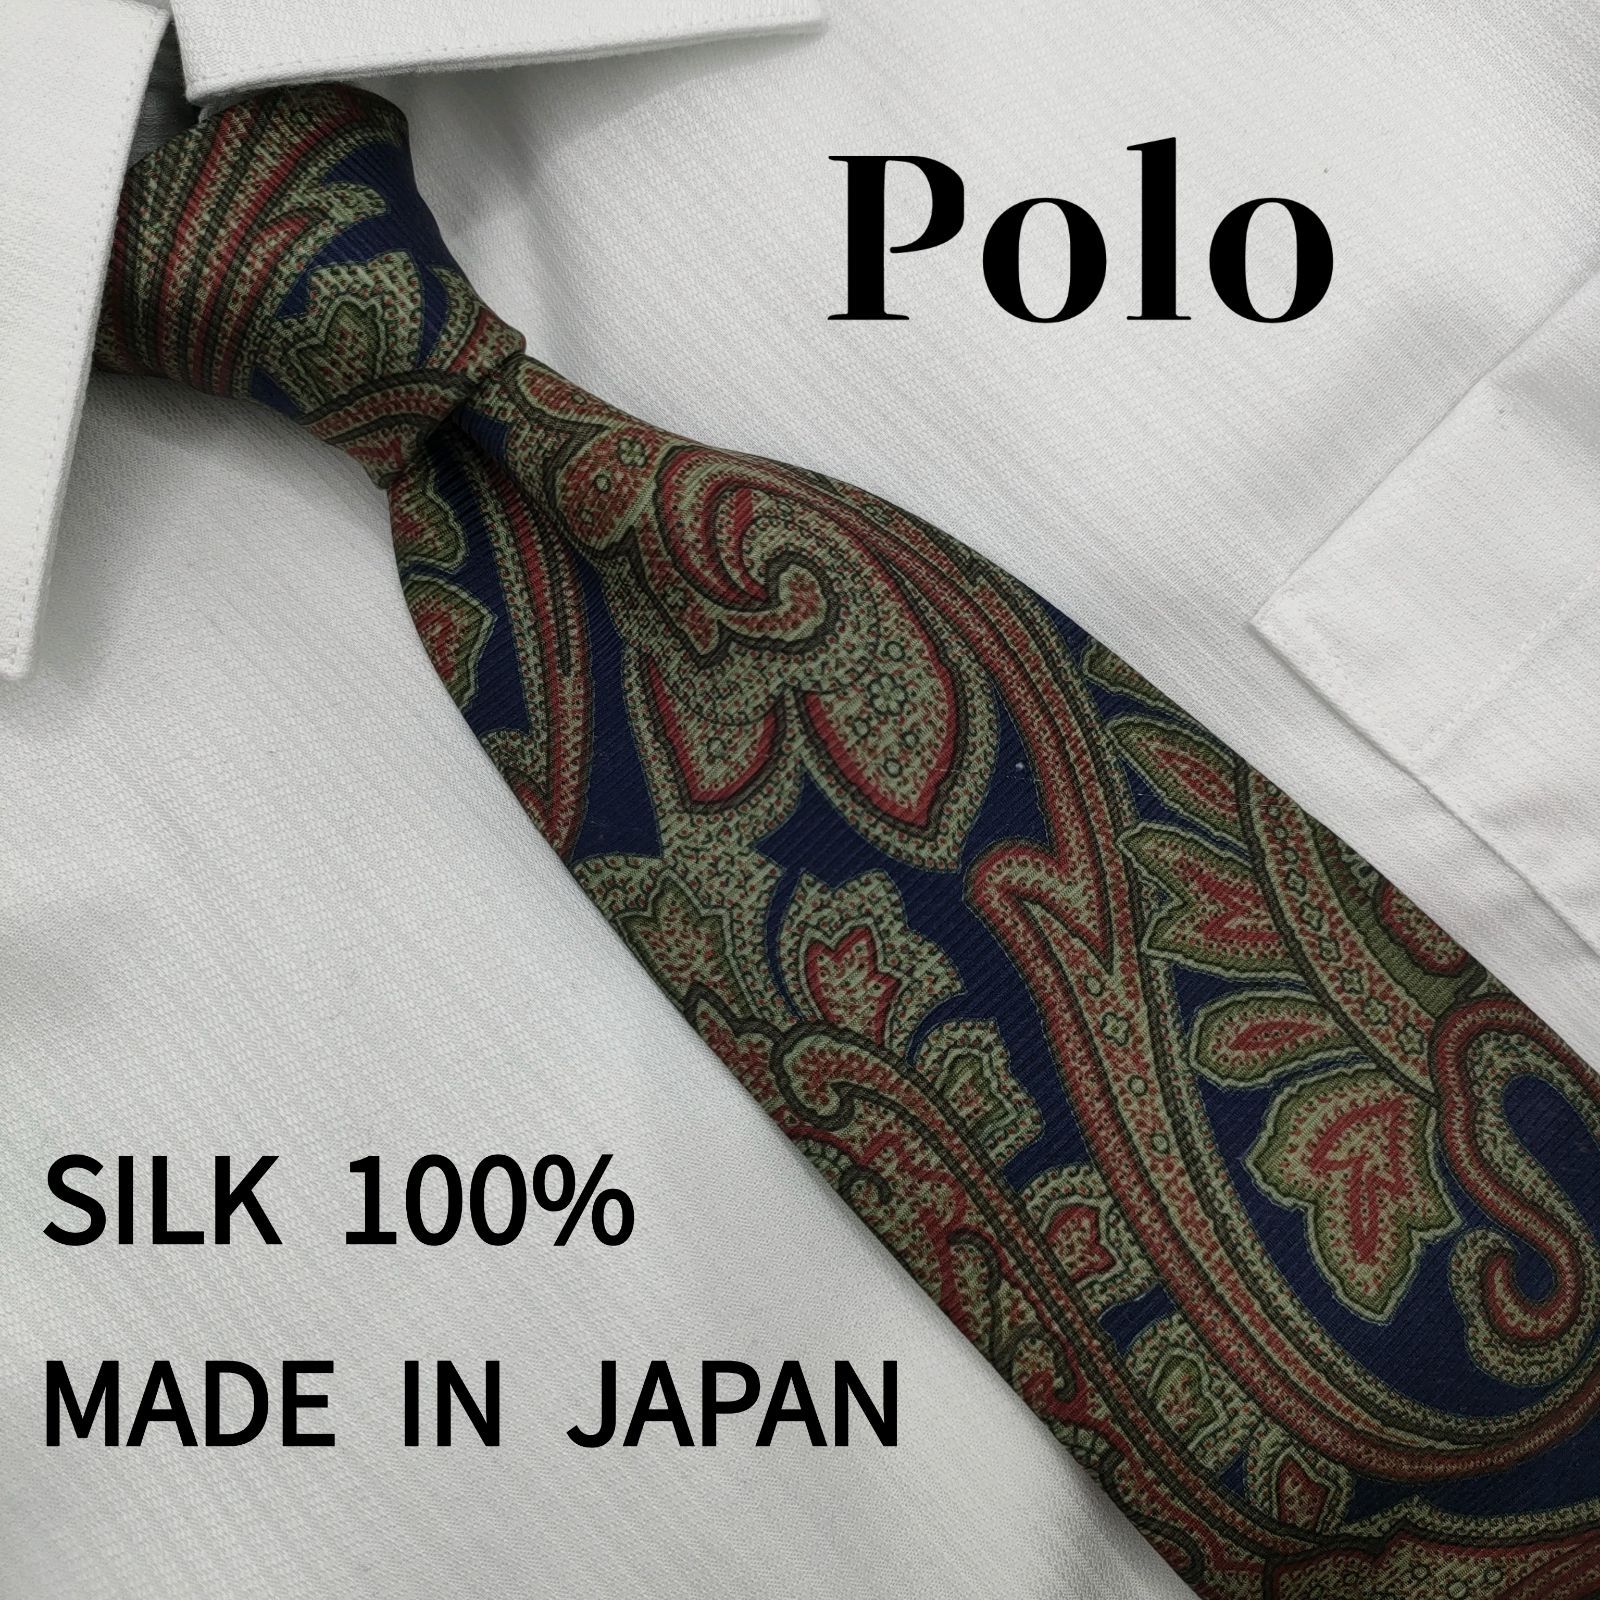 Polo ポロ ネクタイ シルク100% 日本製 ビジネス 大人 上質 - SUNCUS